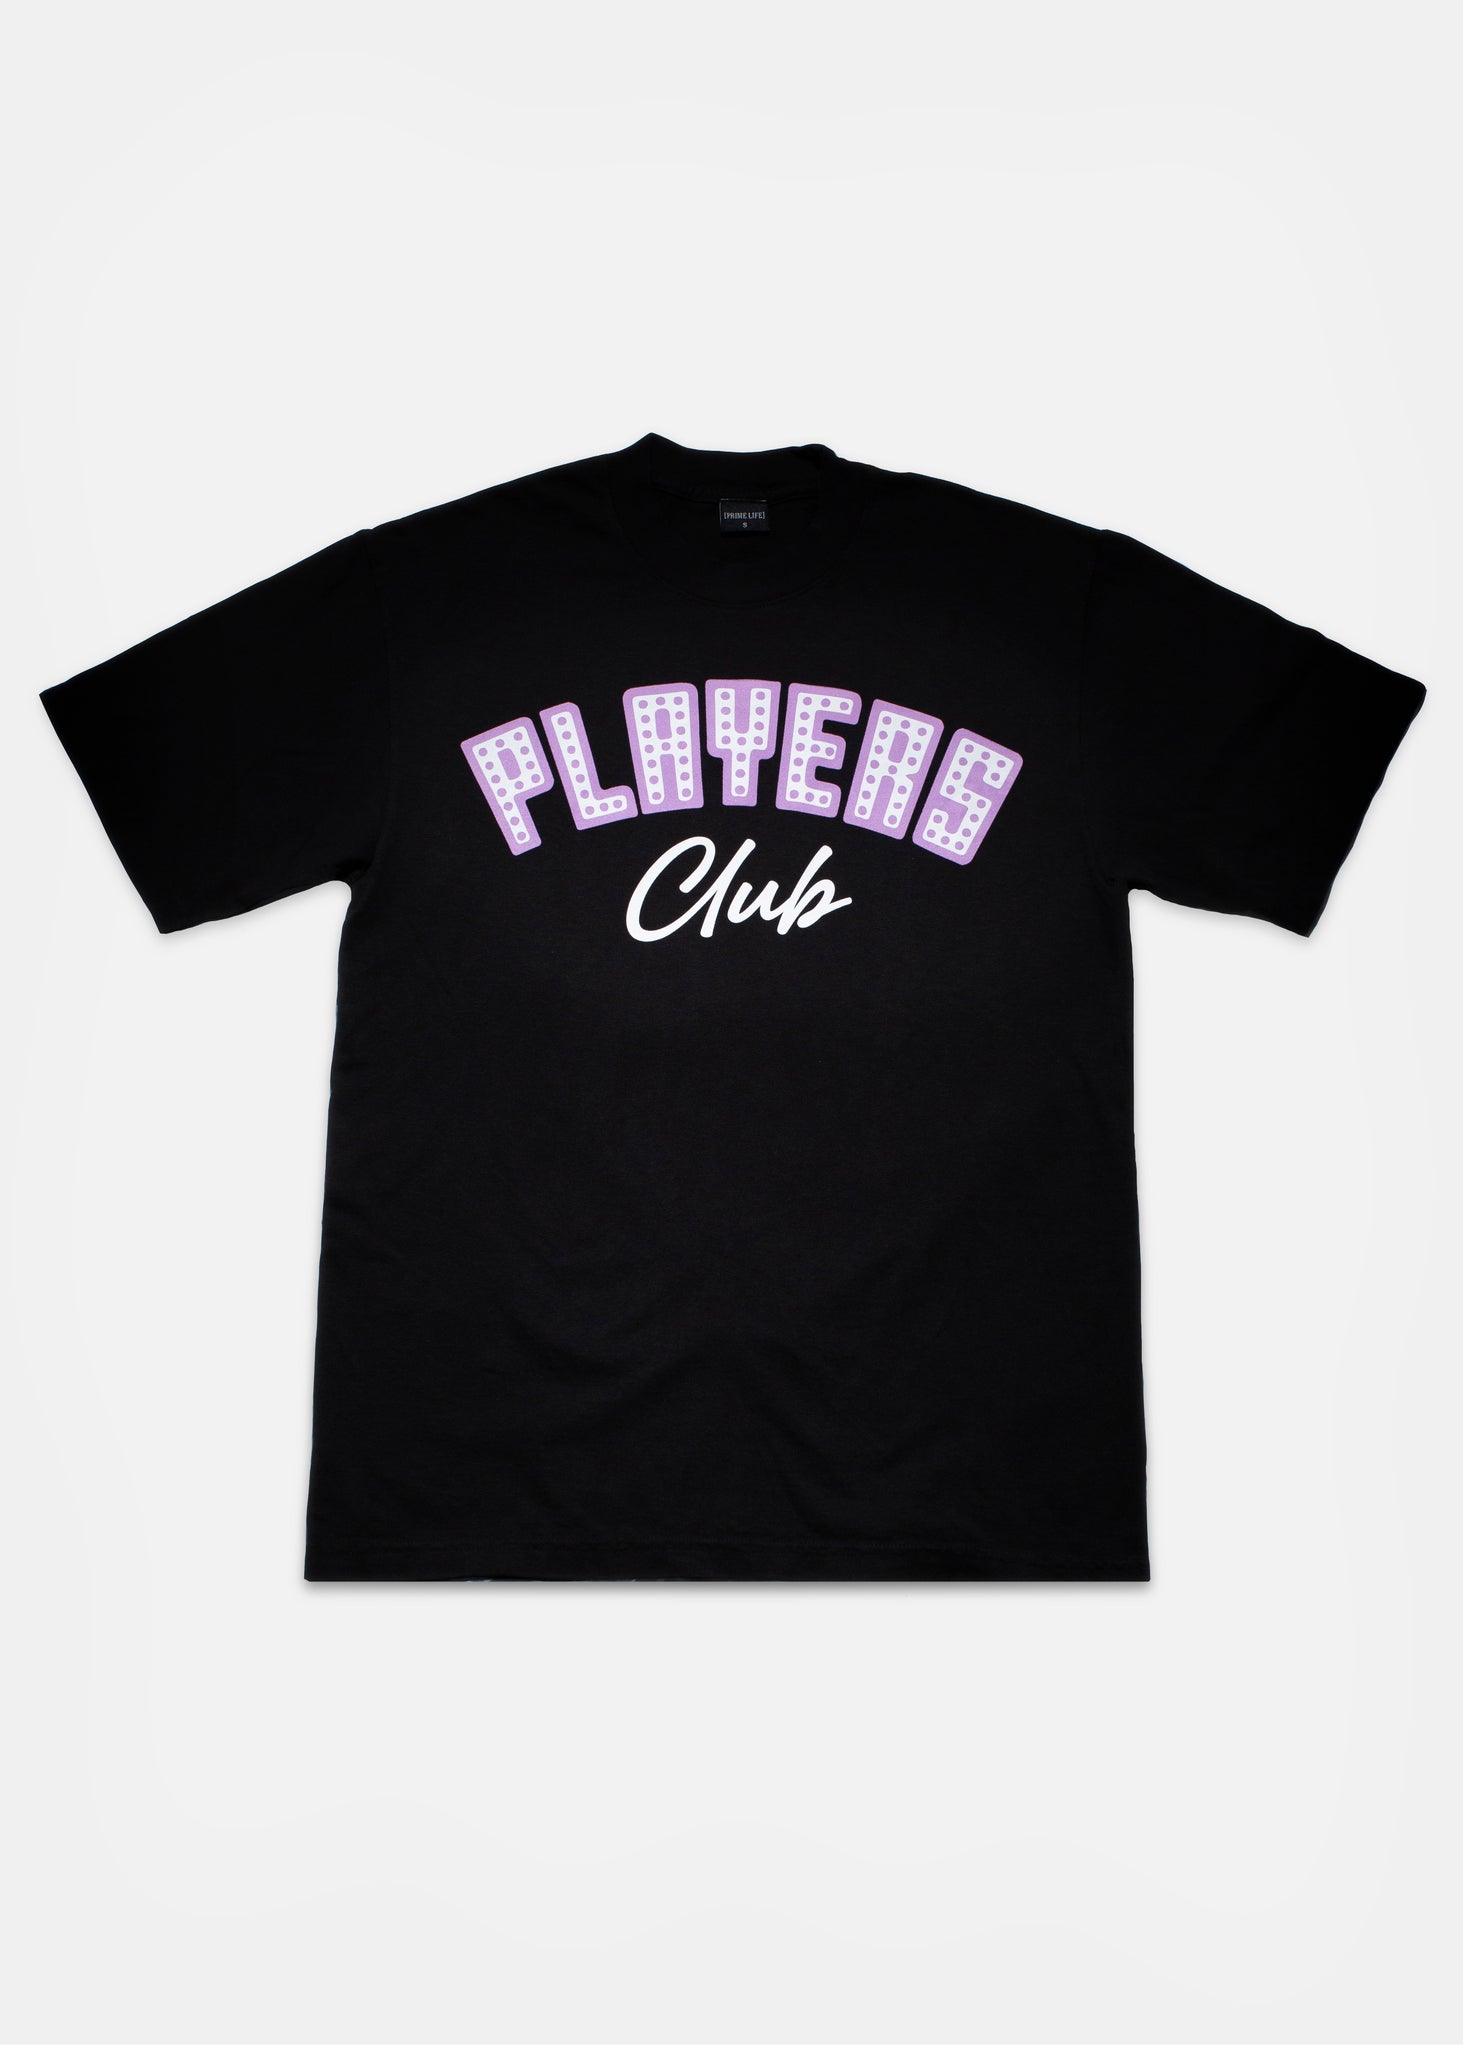 Players Club T-Shirt [Black]